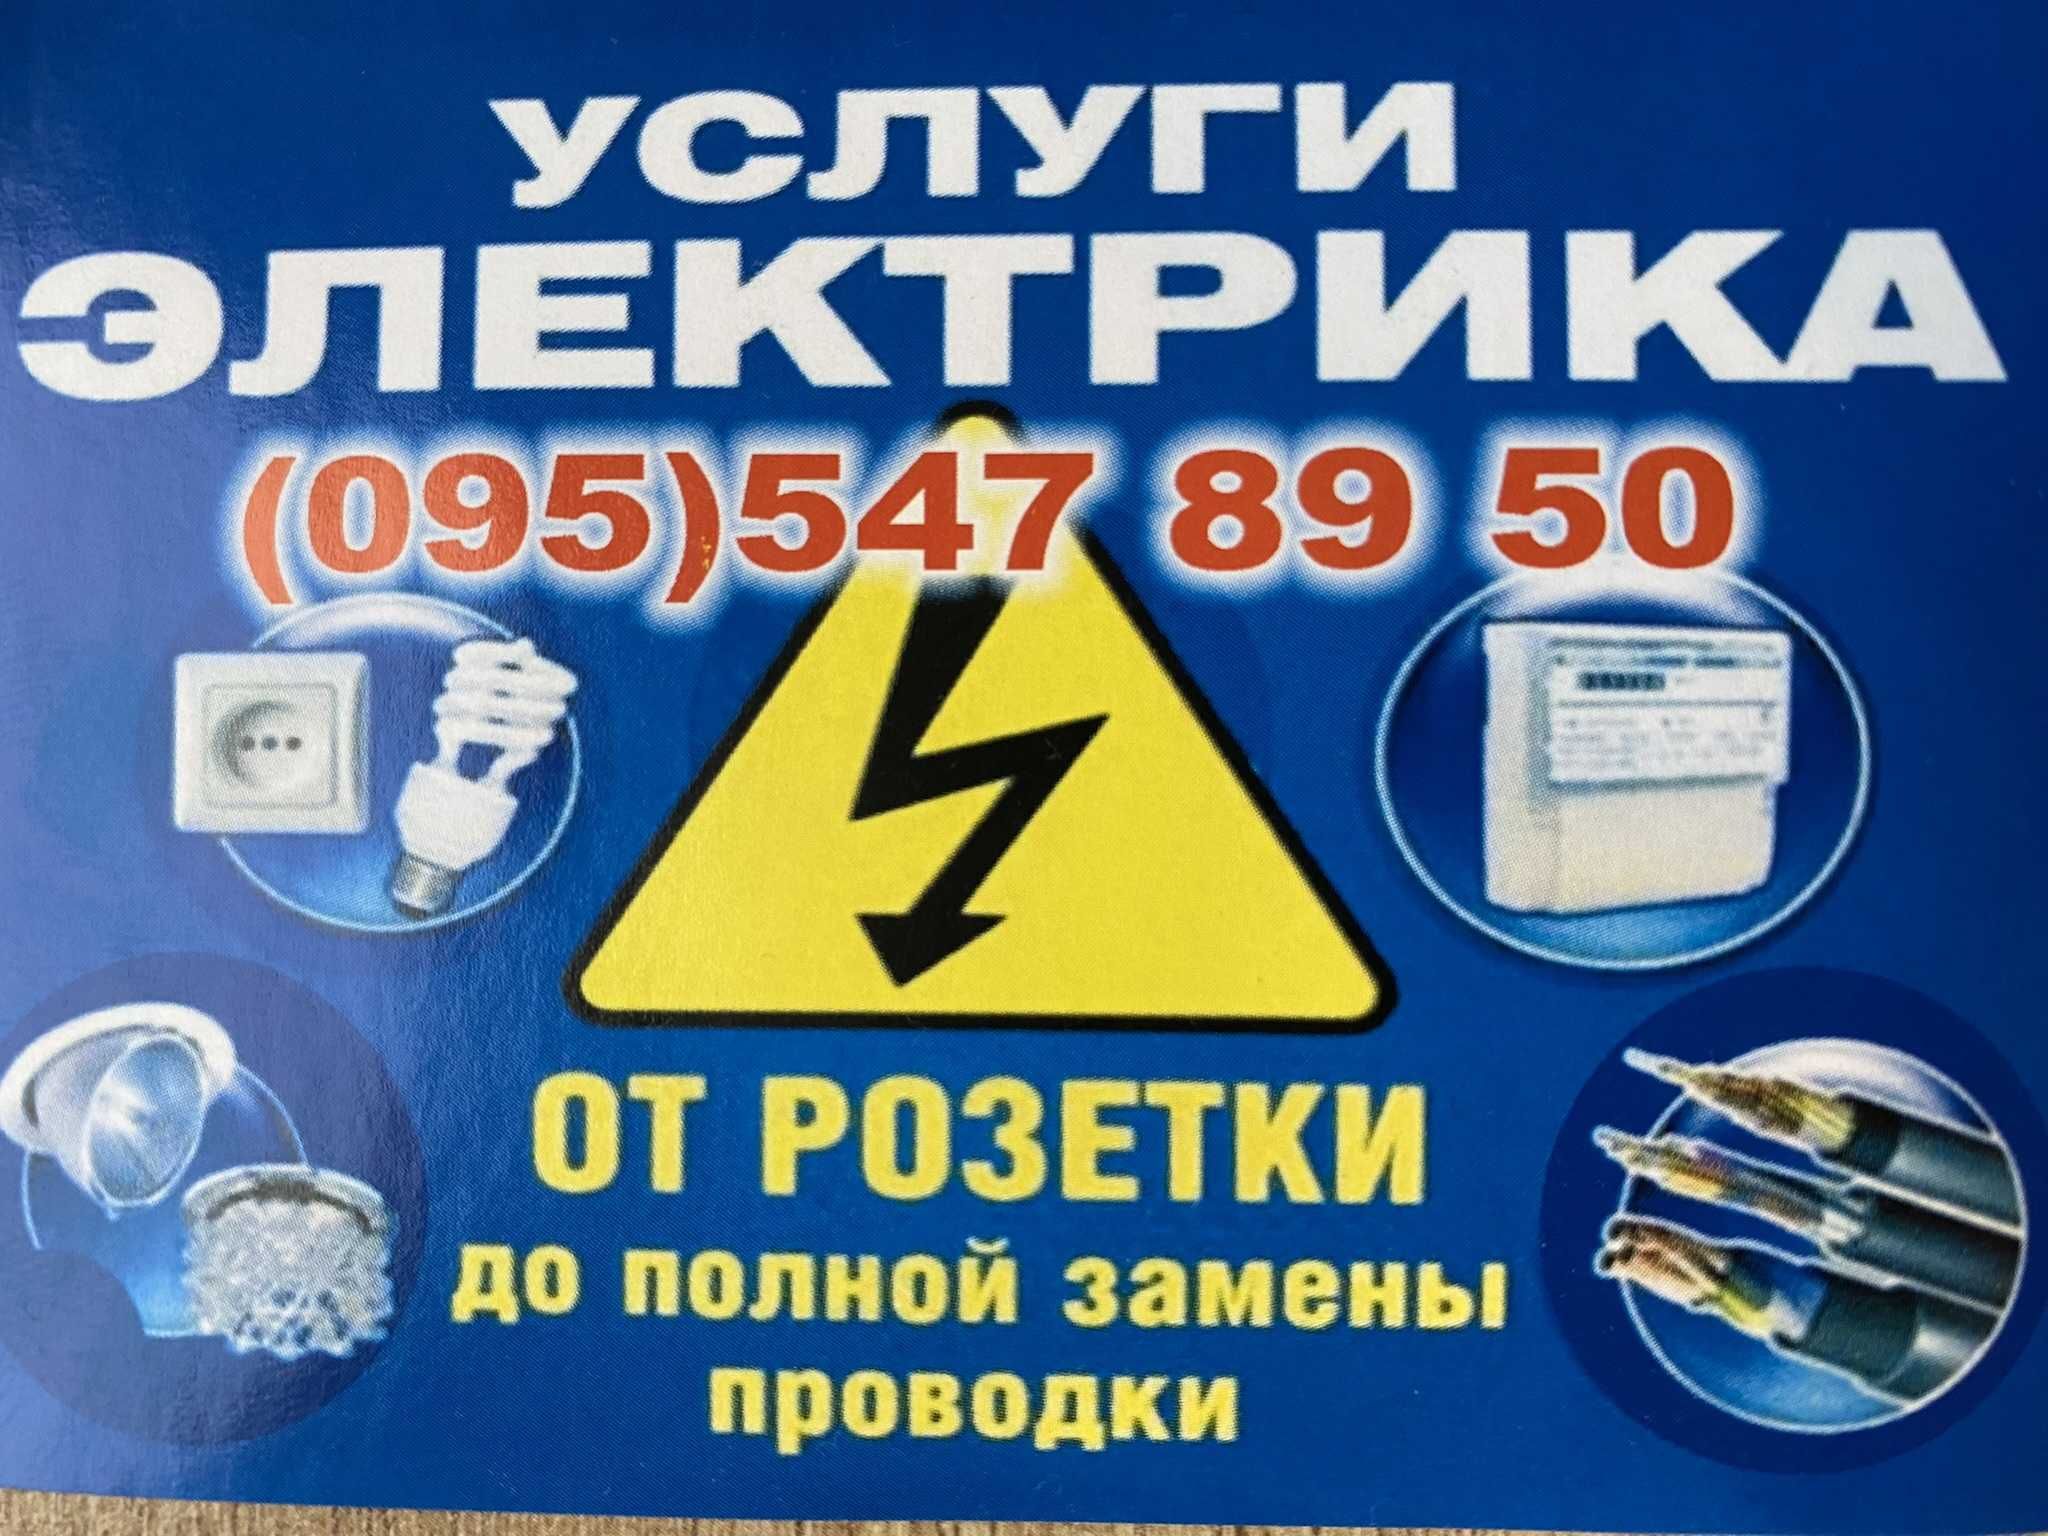 Услуги электрика в Харькове